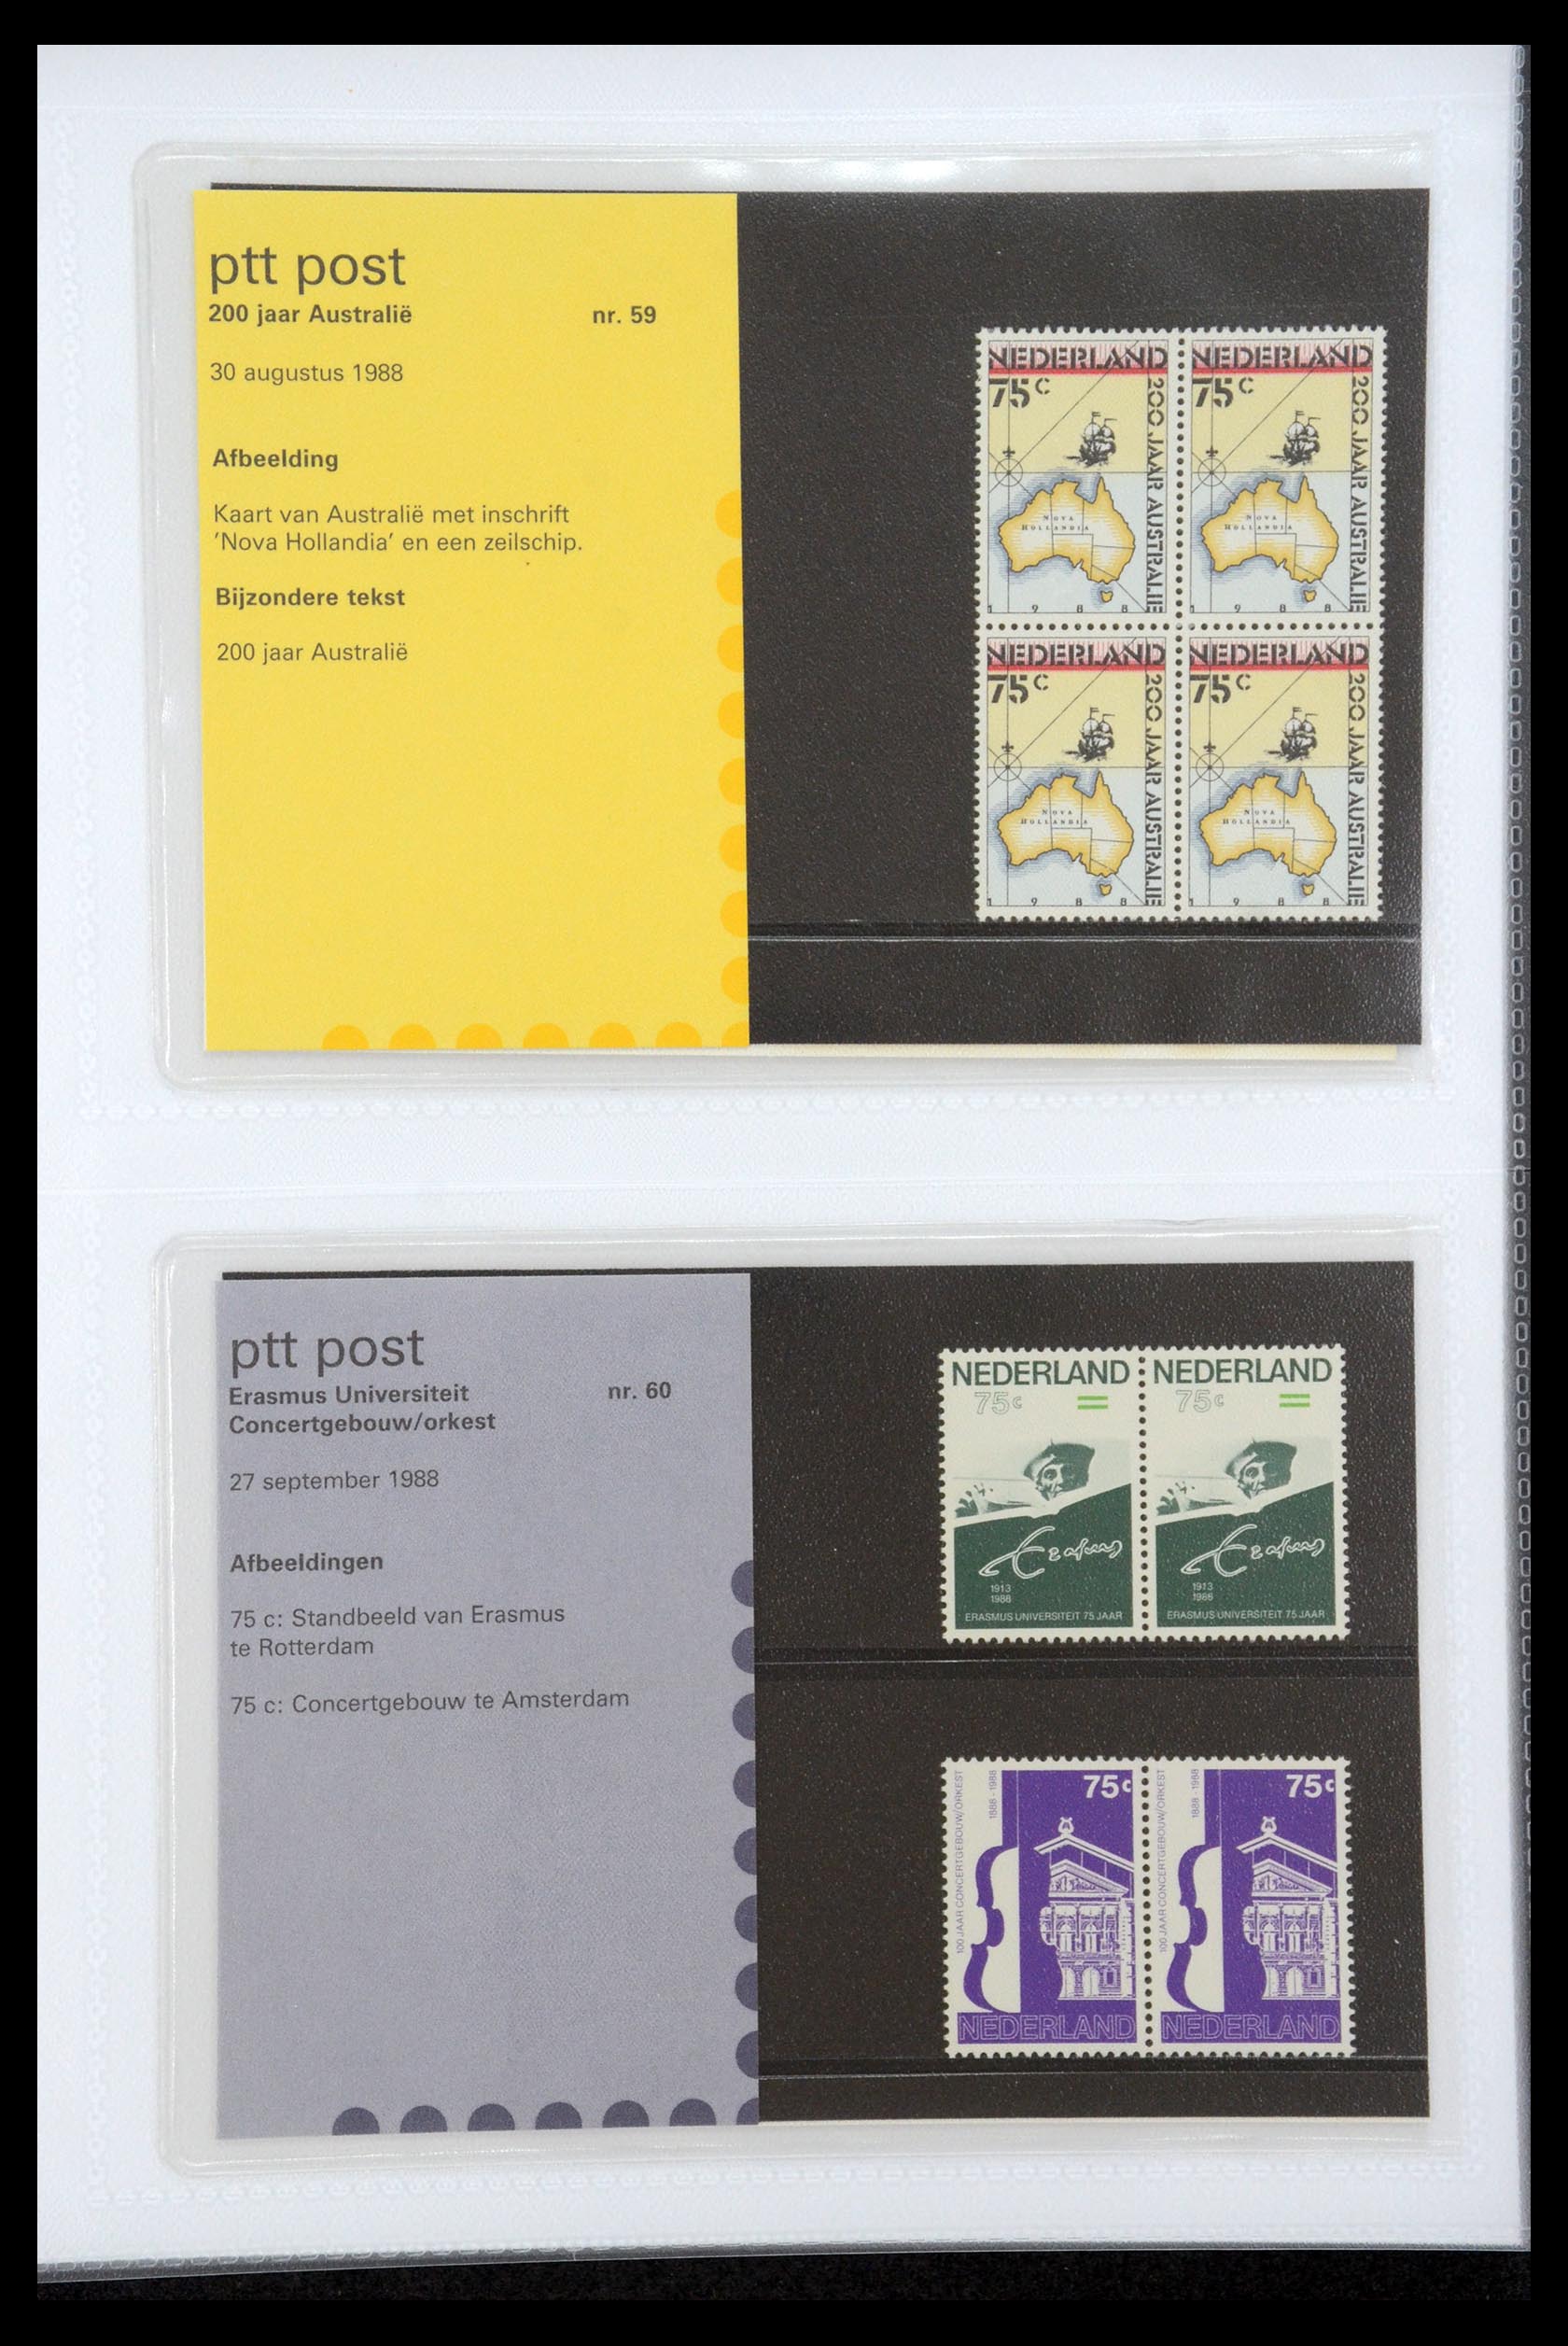 35947 030 - Stamp Collection 35947 Netherlands PTT presentation packs 1982-2019!